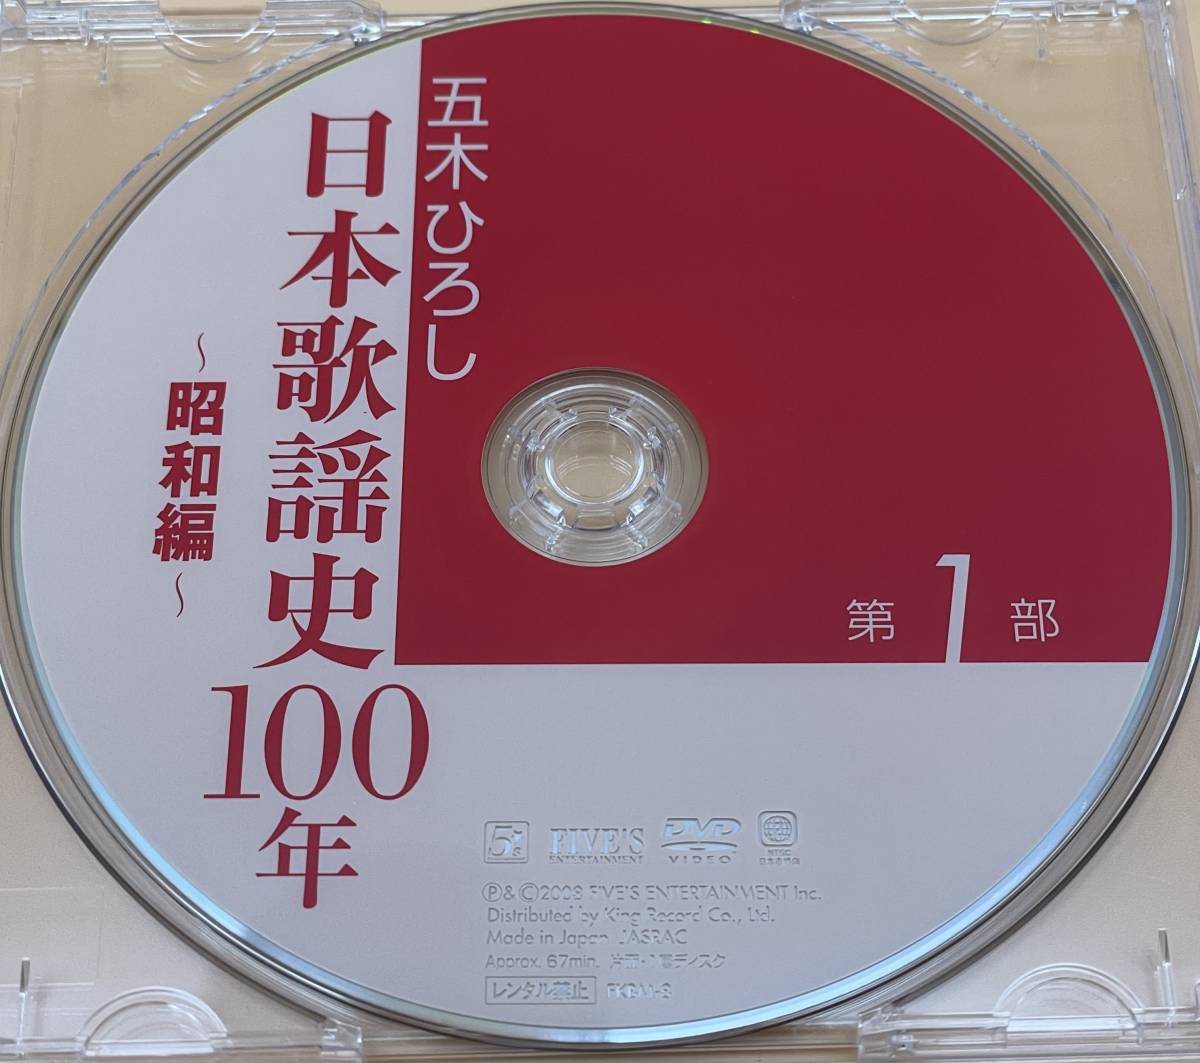 五木ひろし 日本歌謡史100年 第1部のみ DVD 2008年 国立劇場_画像3